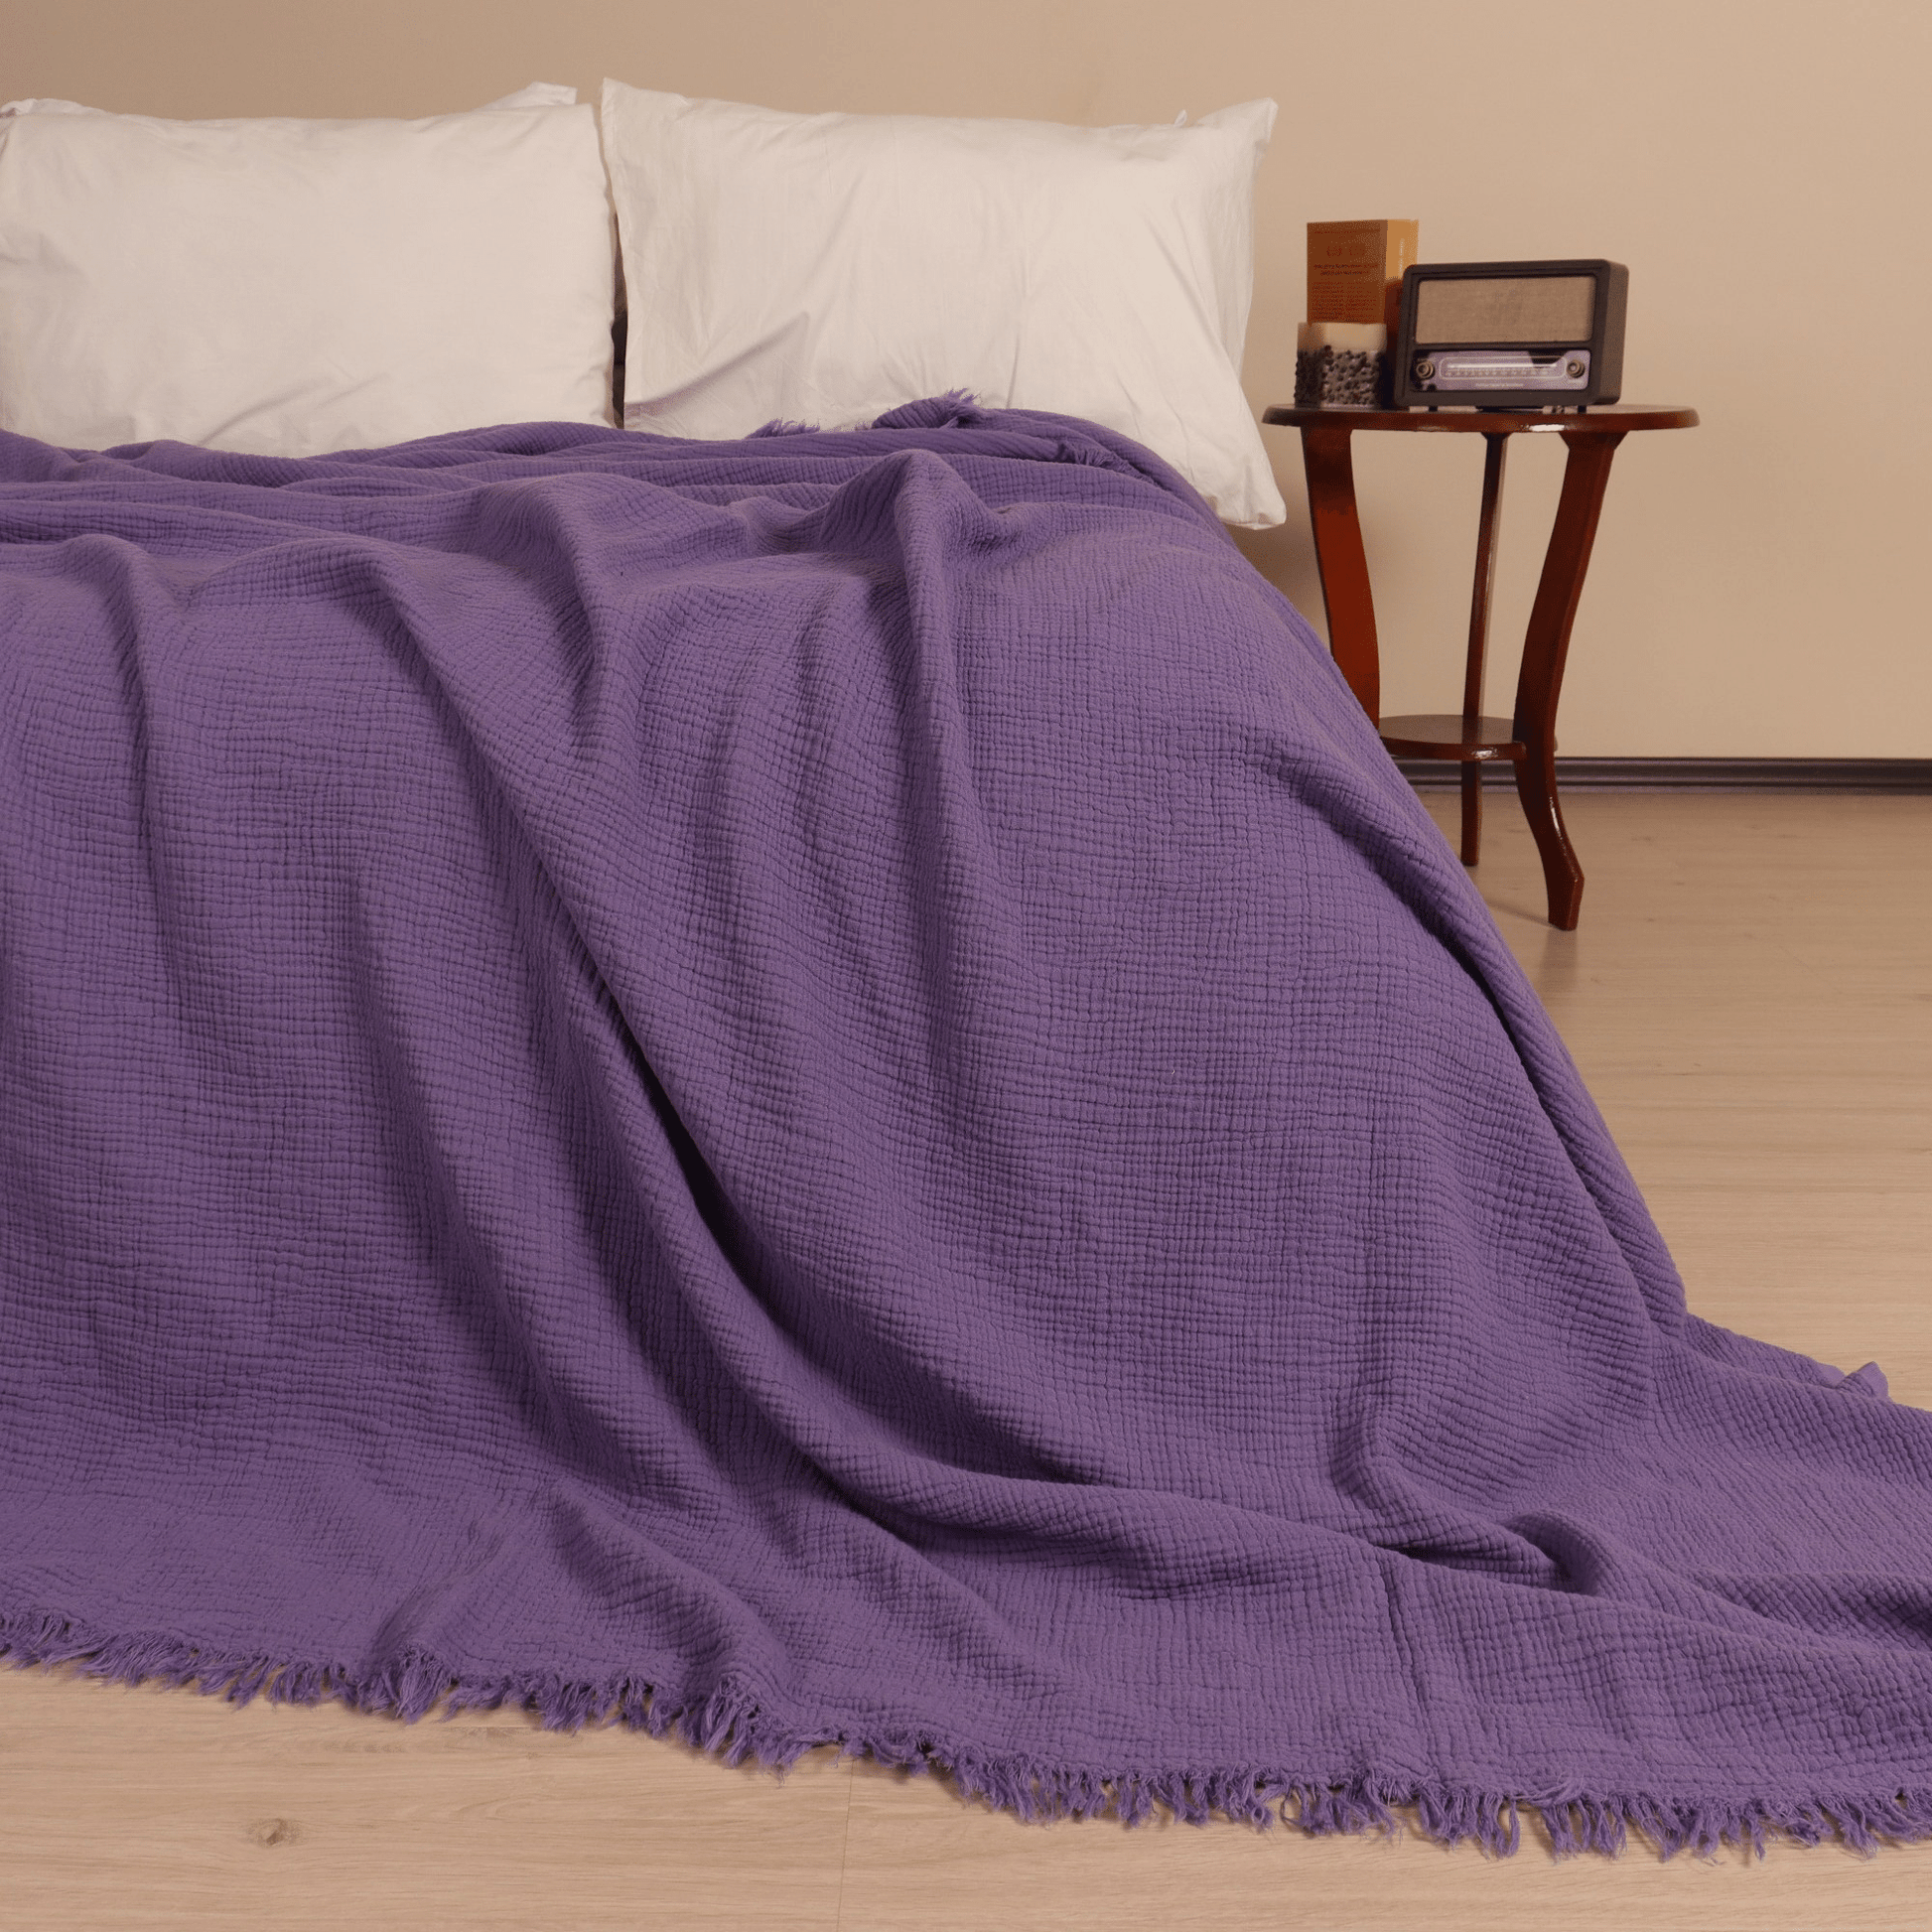 Purple Muslin Blankets for Adults